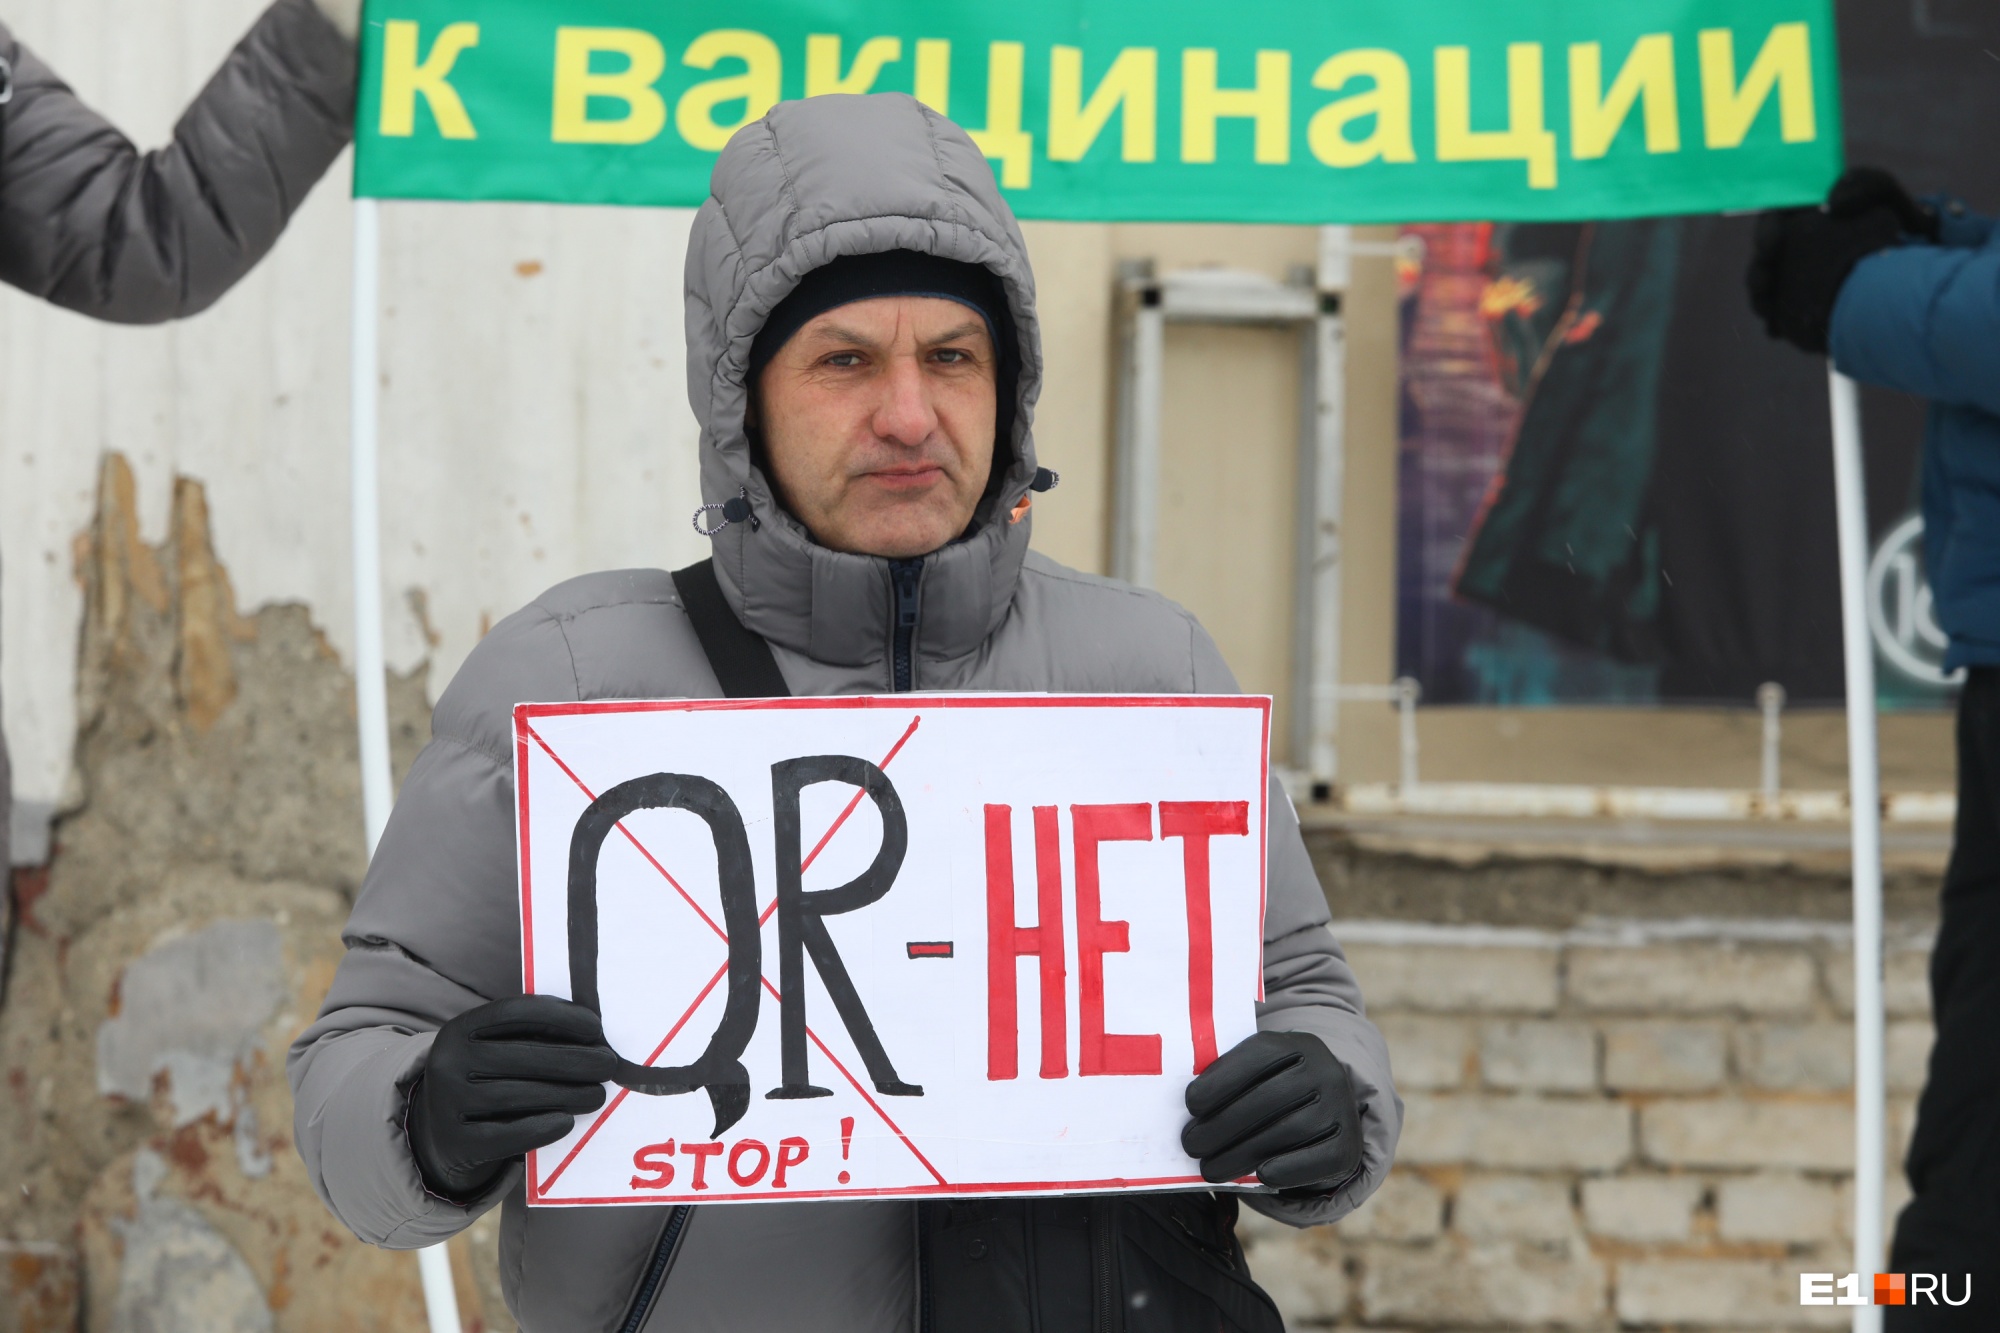 «Это фашизм и сегрегация». В Екатеринбурге прошел массовый протест против введения QR-кодов